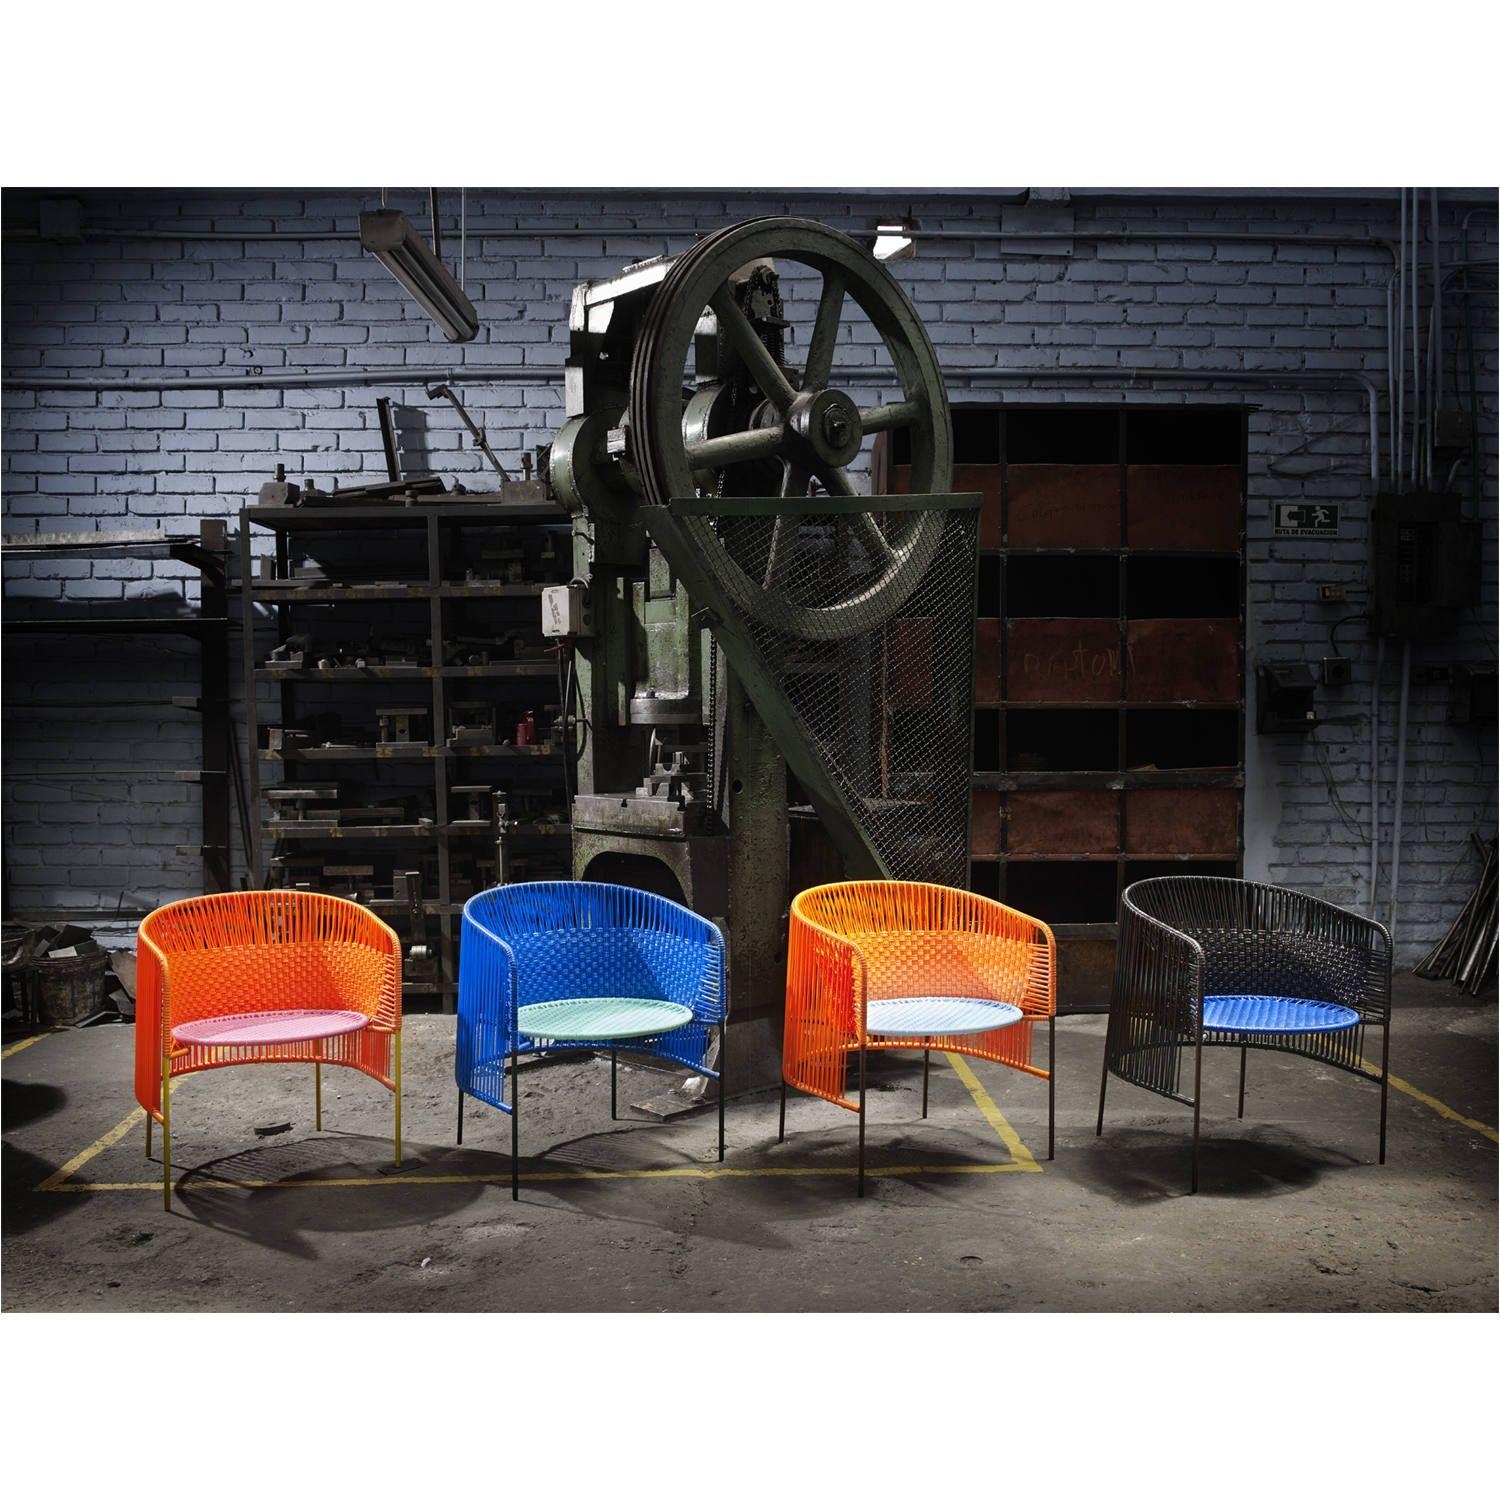 Der charmante Caribe Dining Chair ist ein farbenfrohes Design für Sitzgelegenheiten im Innen- und Außenbereich. Es ist Teil der Caribe Collection, die von Sebastian Herkner für ames entworfen wurde. Die deutsche Designerin besuchte Kolumbien